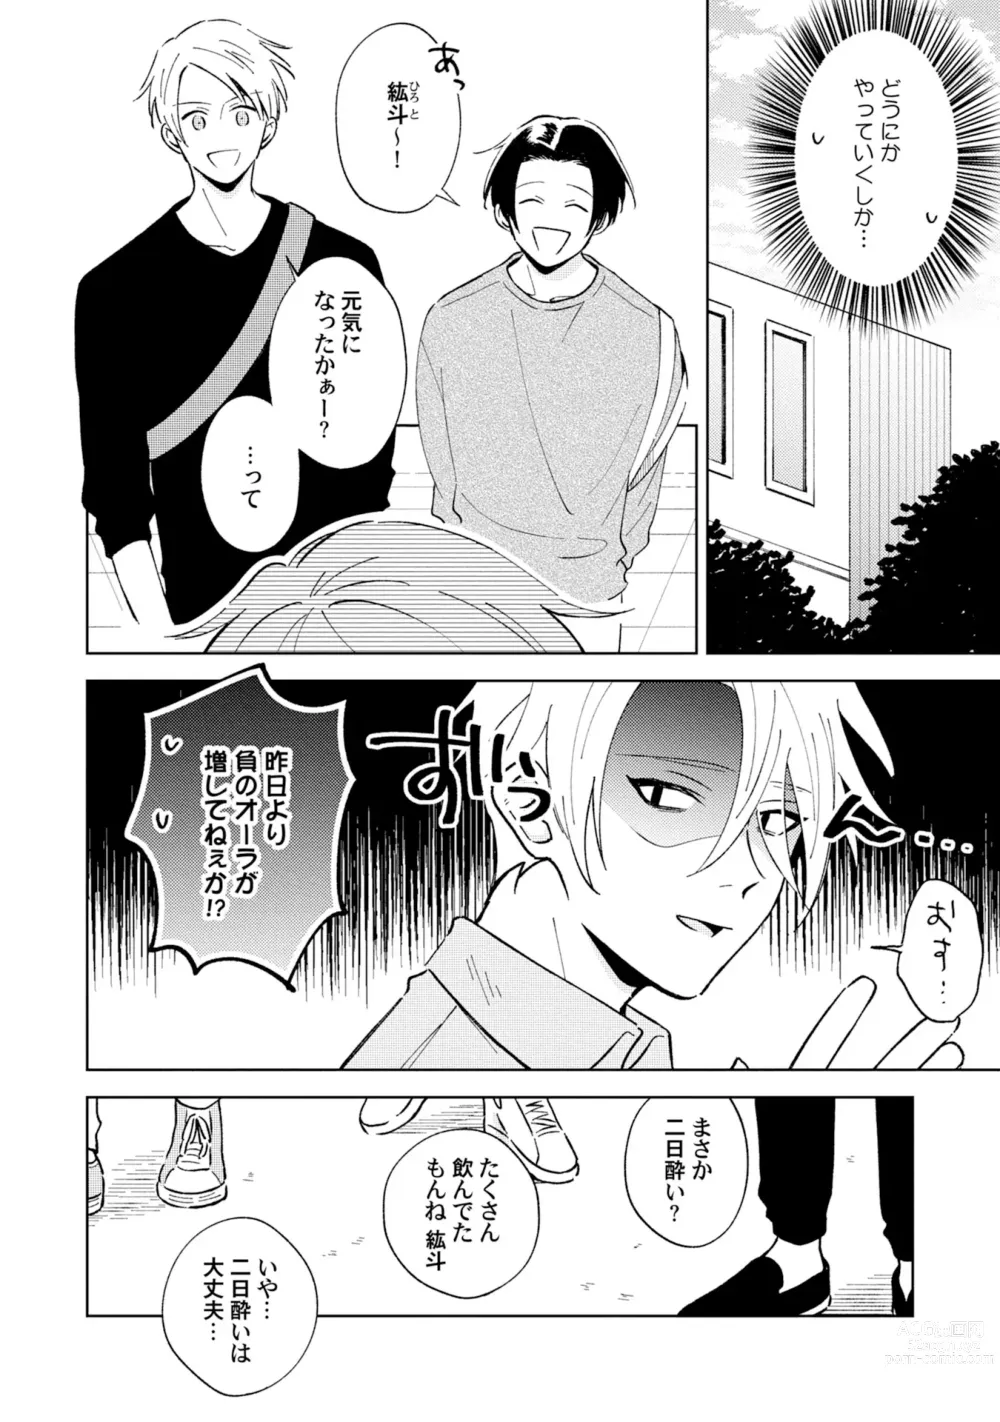 Page 6 of manga Toho 3-byou no Trouble Love Room 2